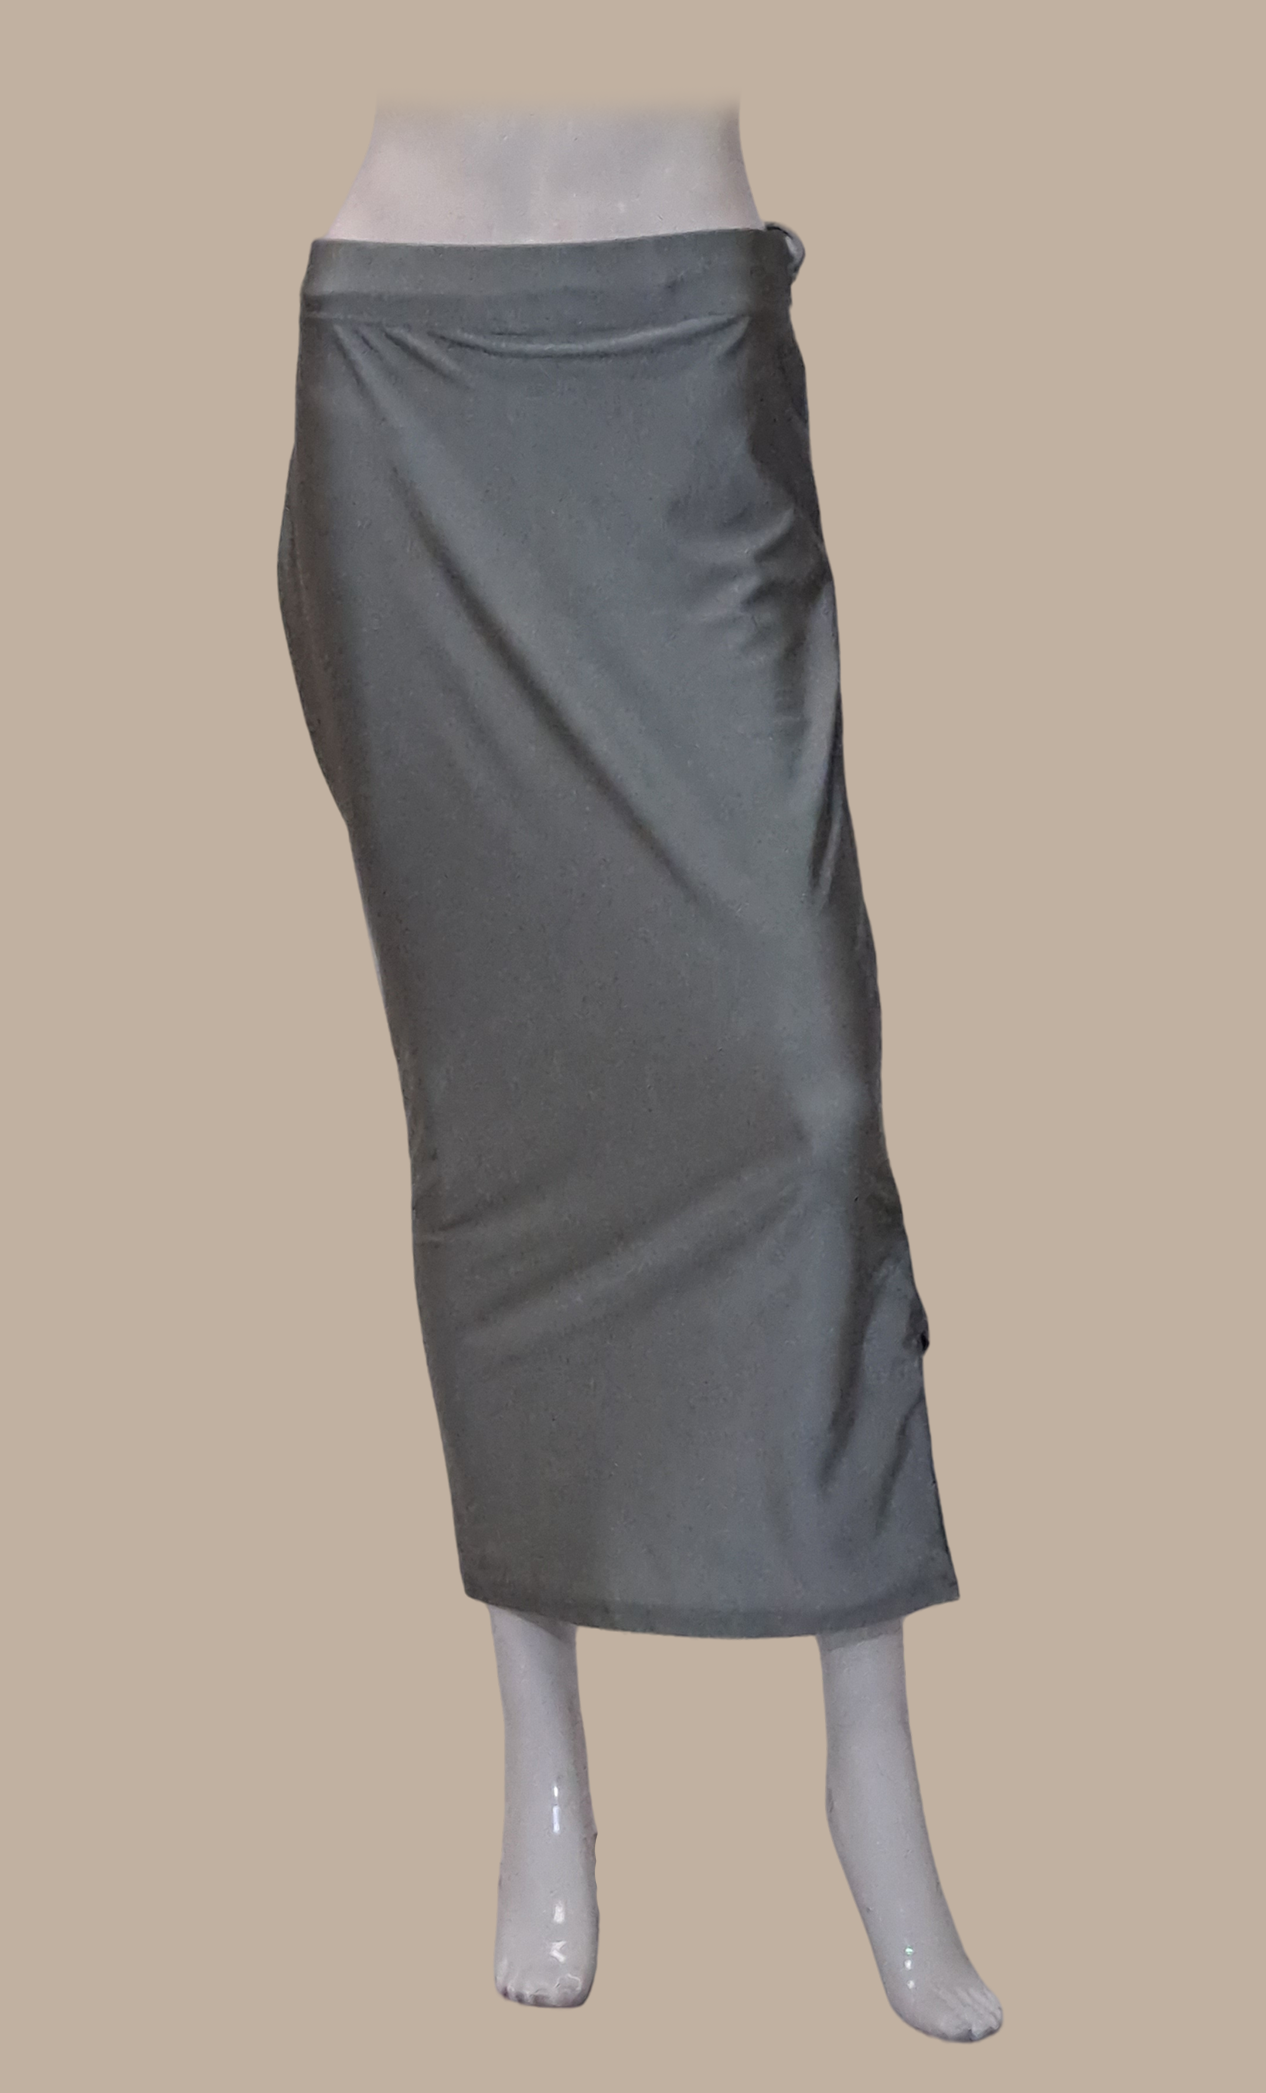 Grey Shape Wear Under Skirt